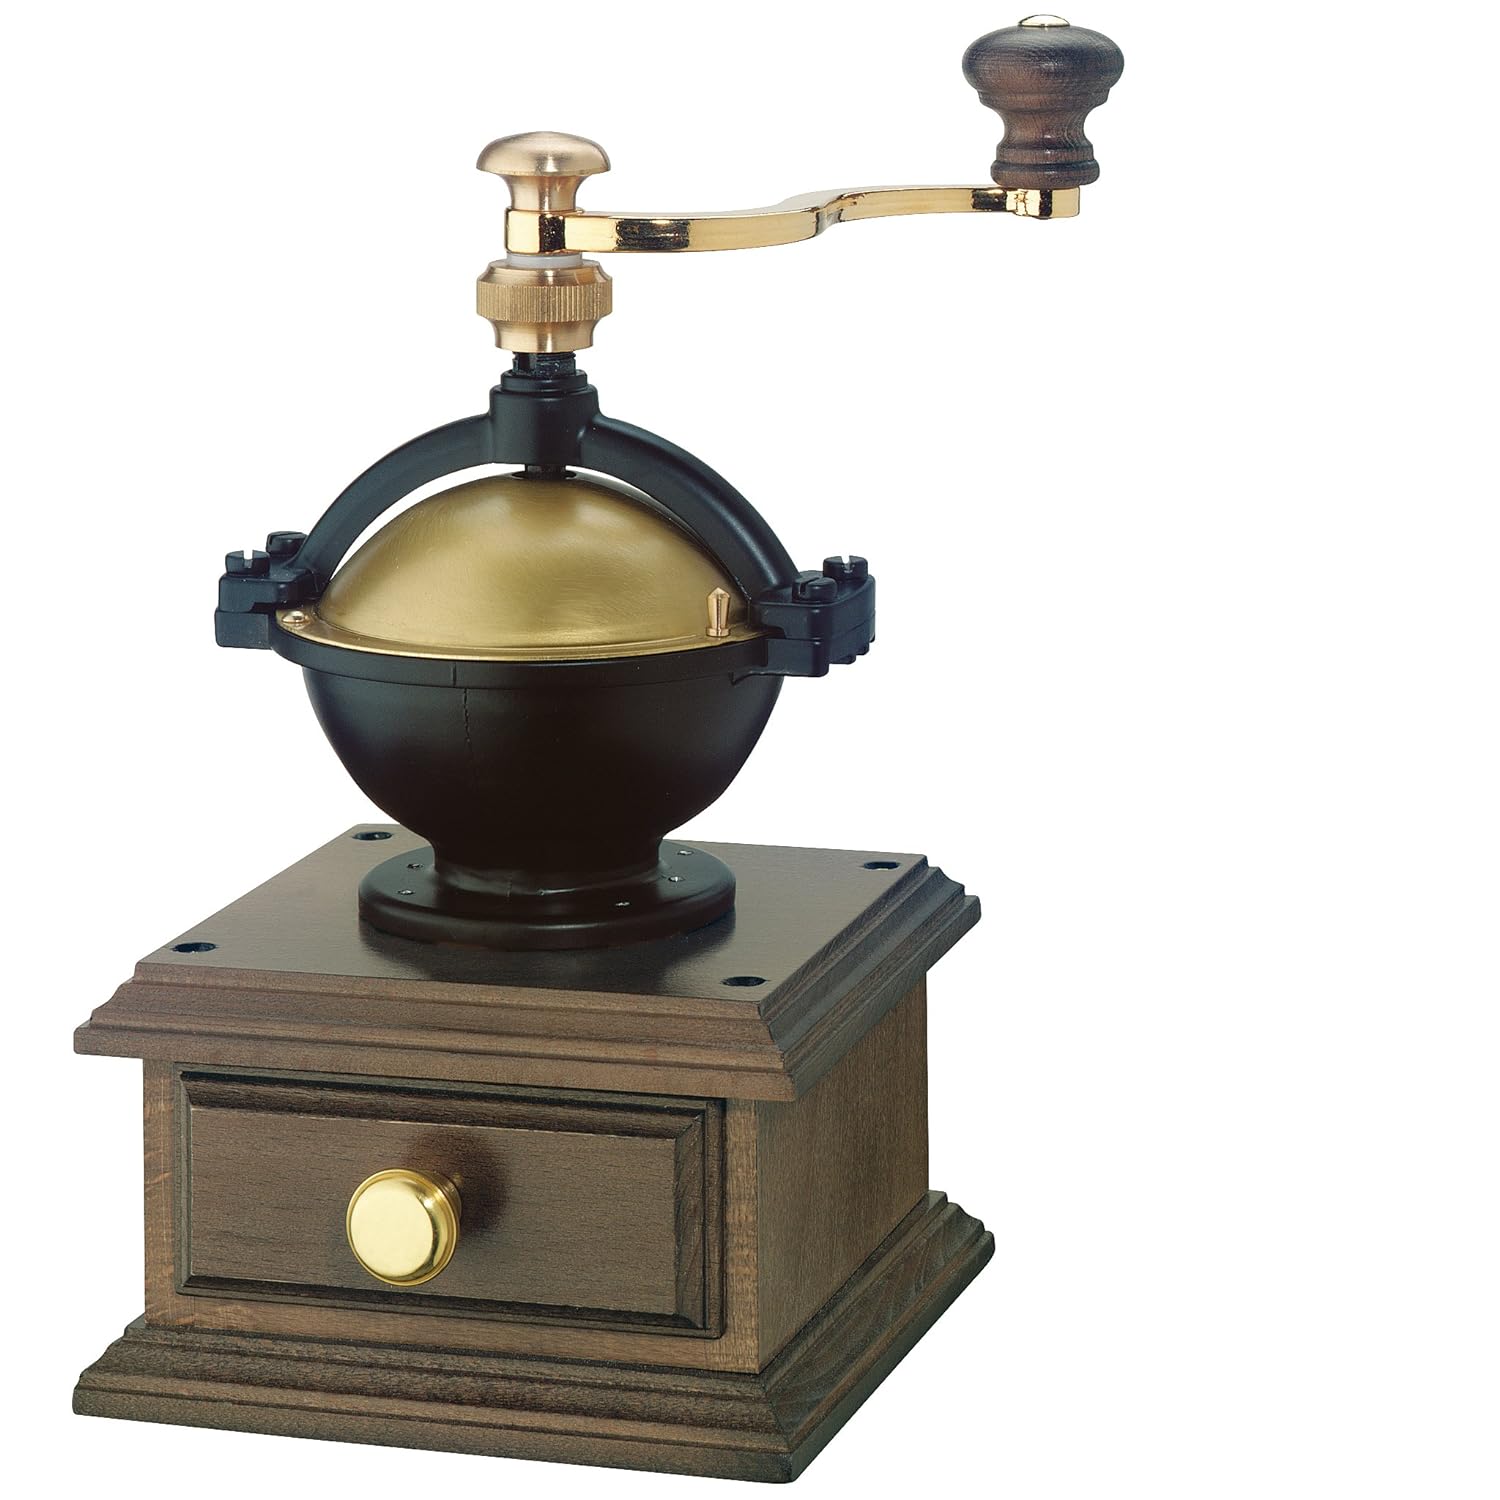 Zassenhaus 0000040128 coffee grinder La Paz dark stained, wood, brown, 14.5 x 23.4 x 14.5 cm